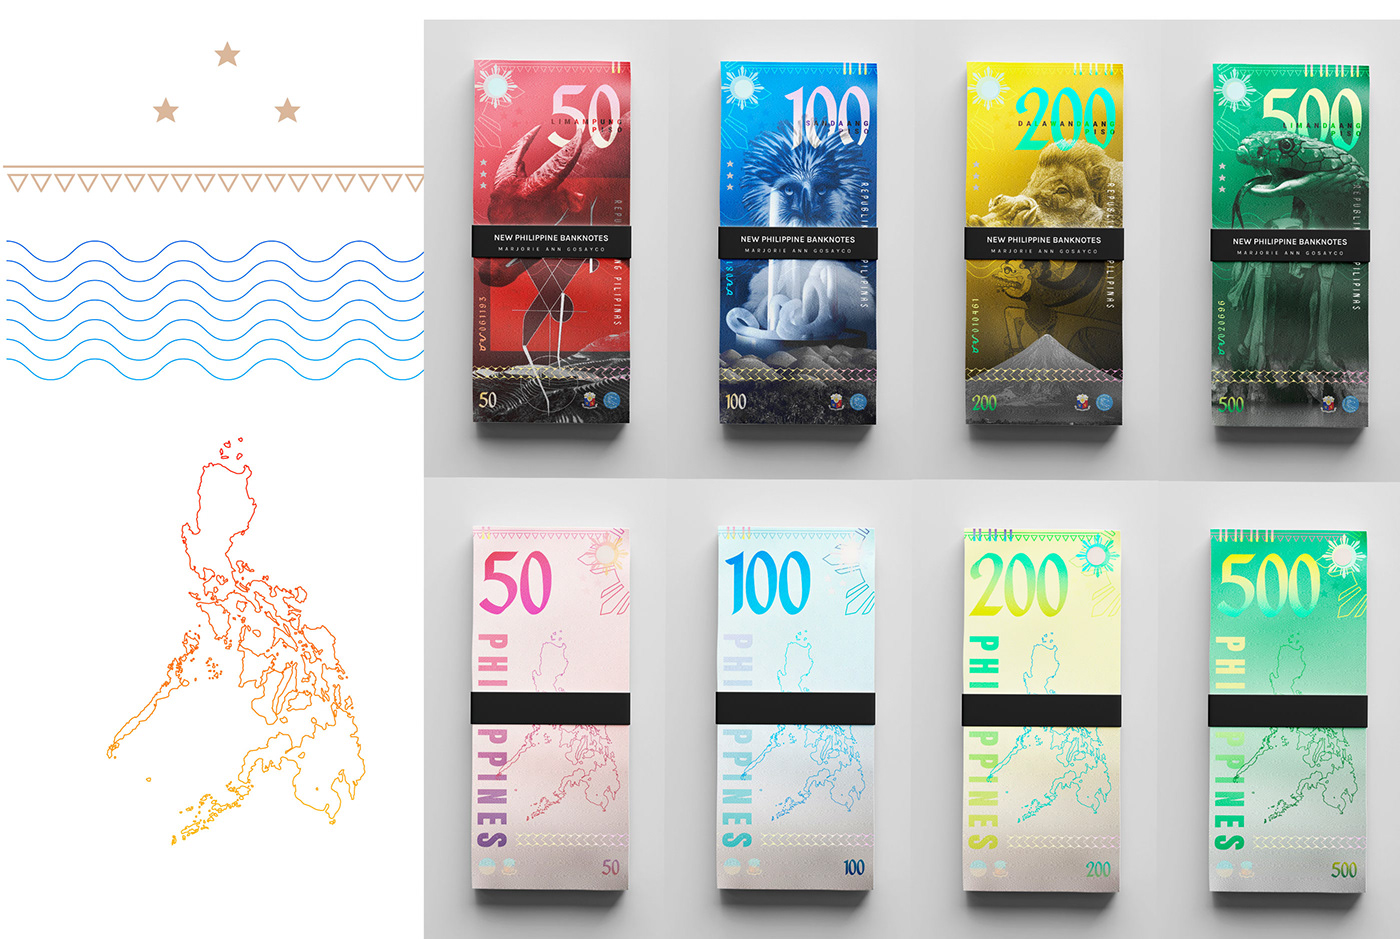 banknotes redesign graphic design  designer visual identity Graphic Designer photoshop